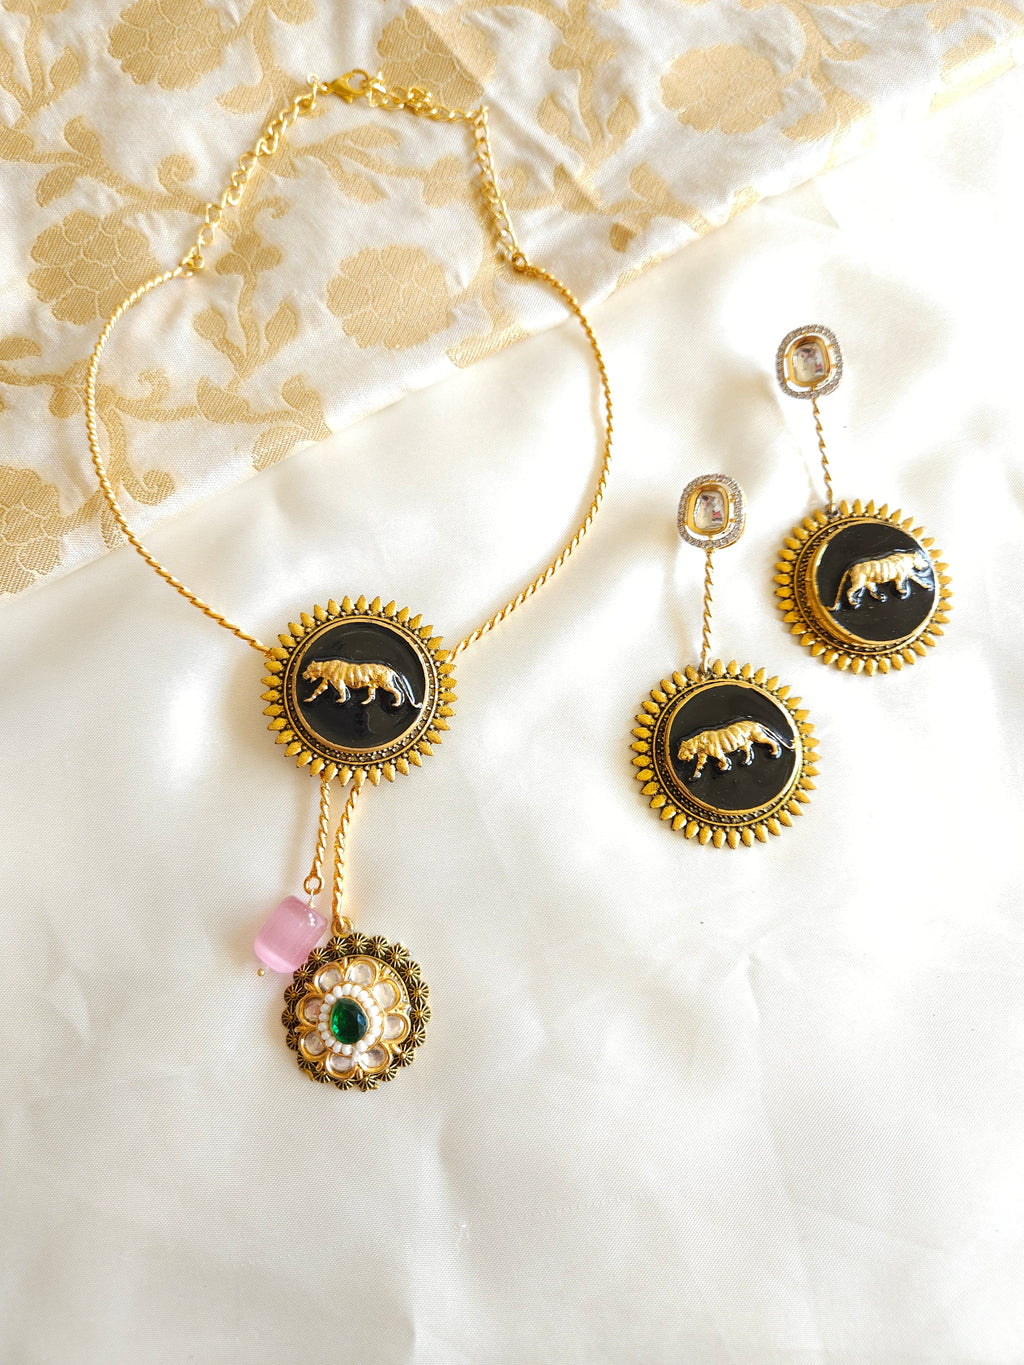 Sabyasachi inspired hasli necklace set